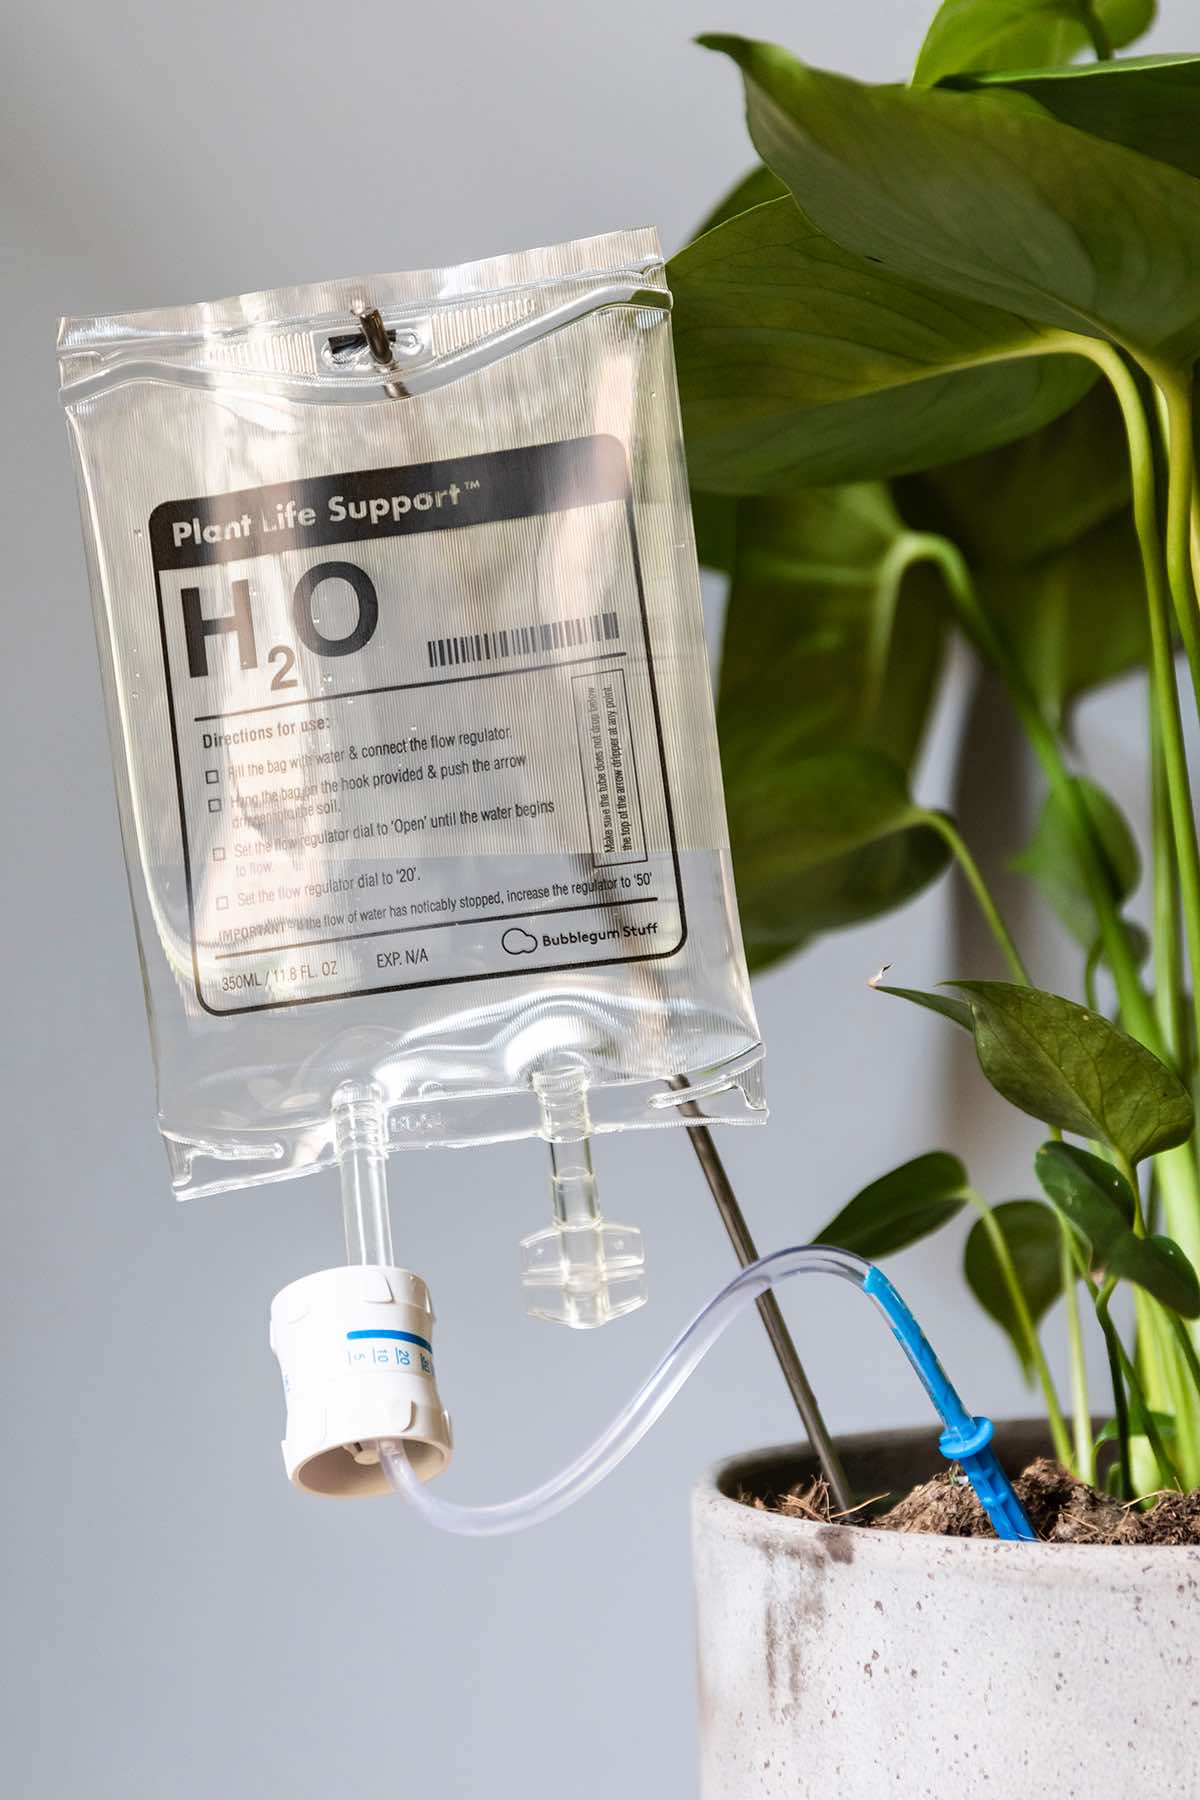 Na slici se vidi prozirna infuzijska vrećica s natpisom "H2O plant life support ". Vrećica je upiknuta u zemlju u ukrasnoj teglici u kojoj je posađena monstera. Vrećica služi za navodnjavanje biljke. Pozadina slike je sive boje.